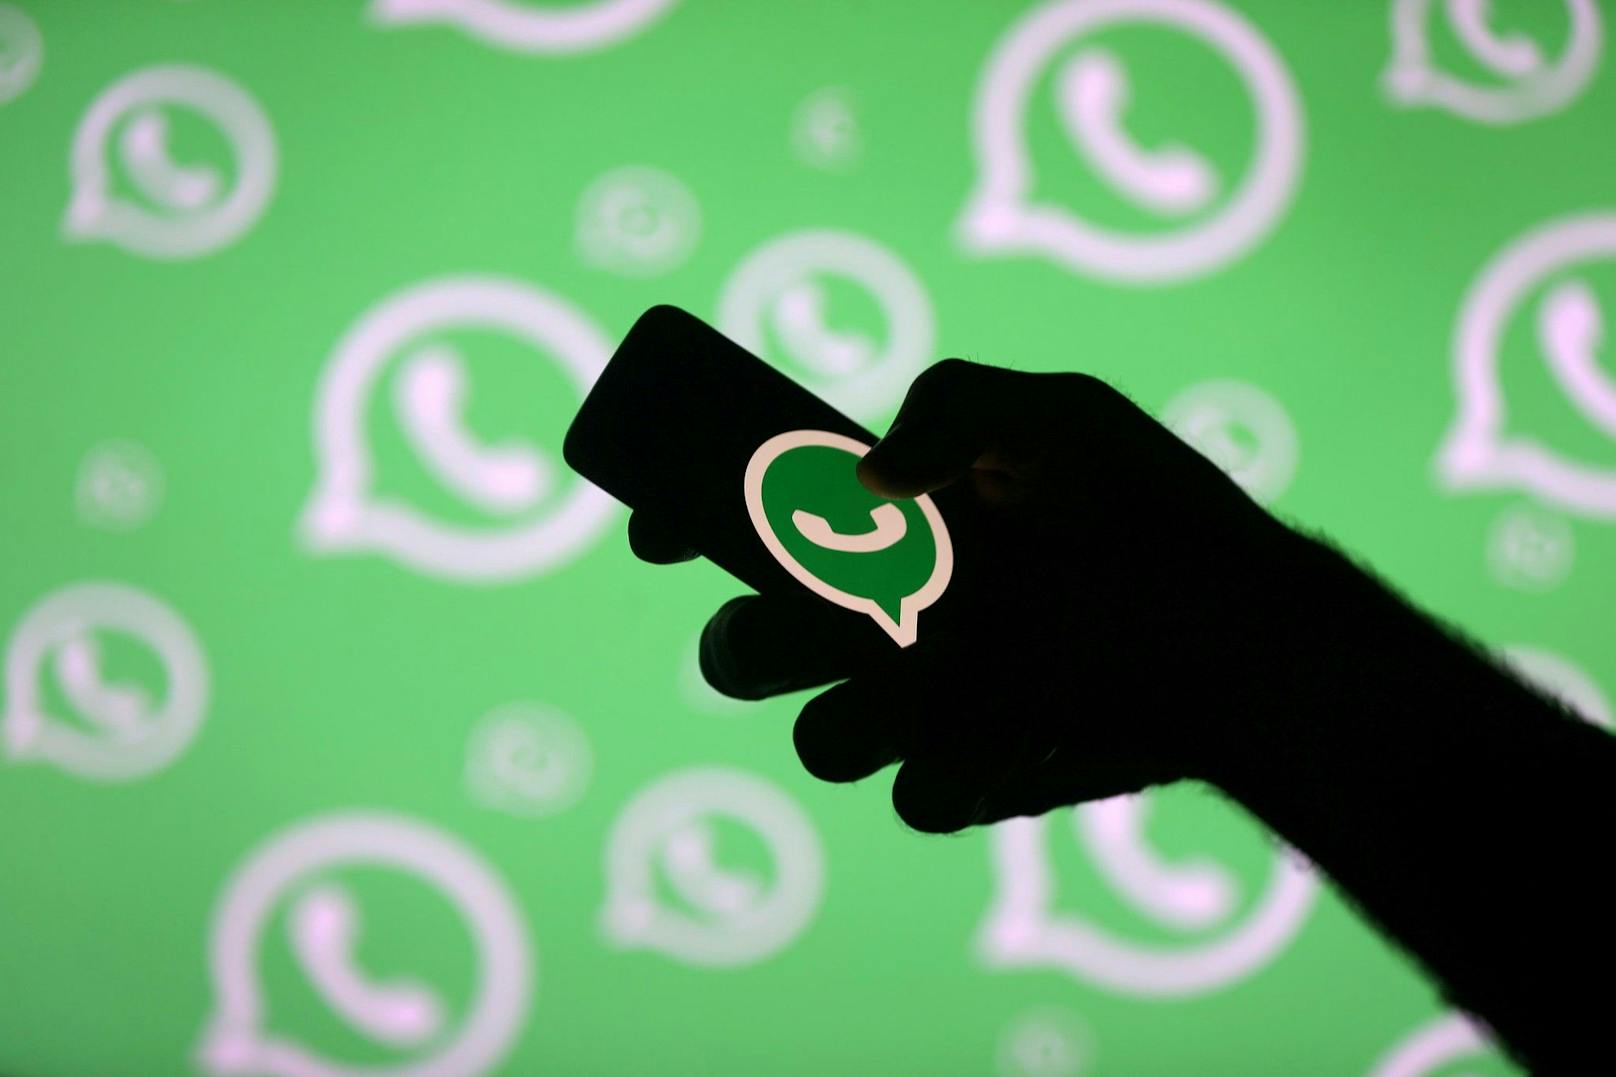 "Daumen hoch" auf WhatsApp bringt Schüler vor Gericht